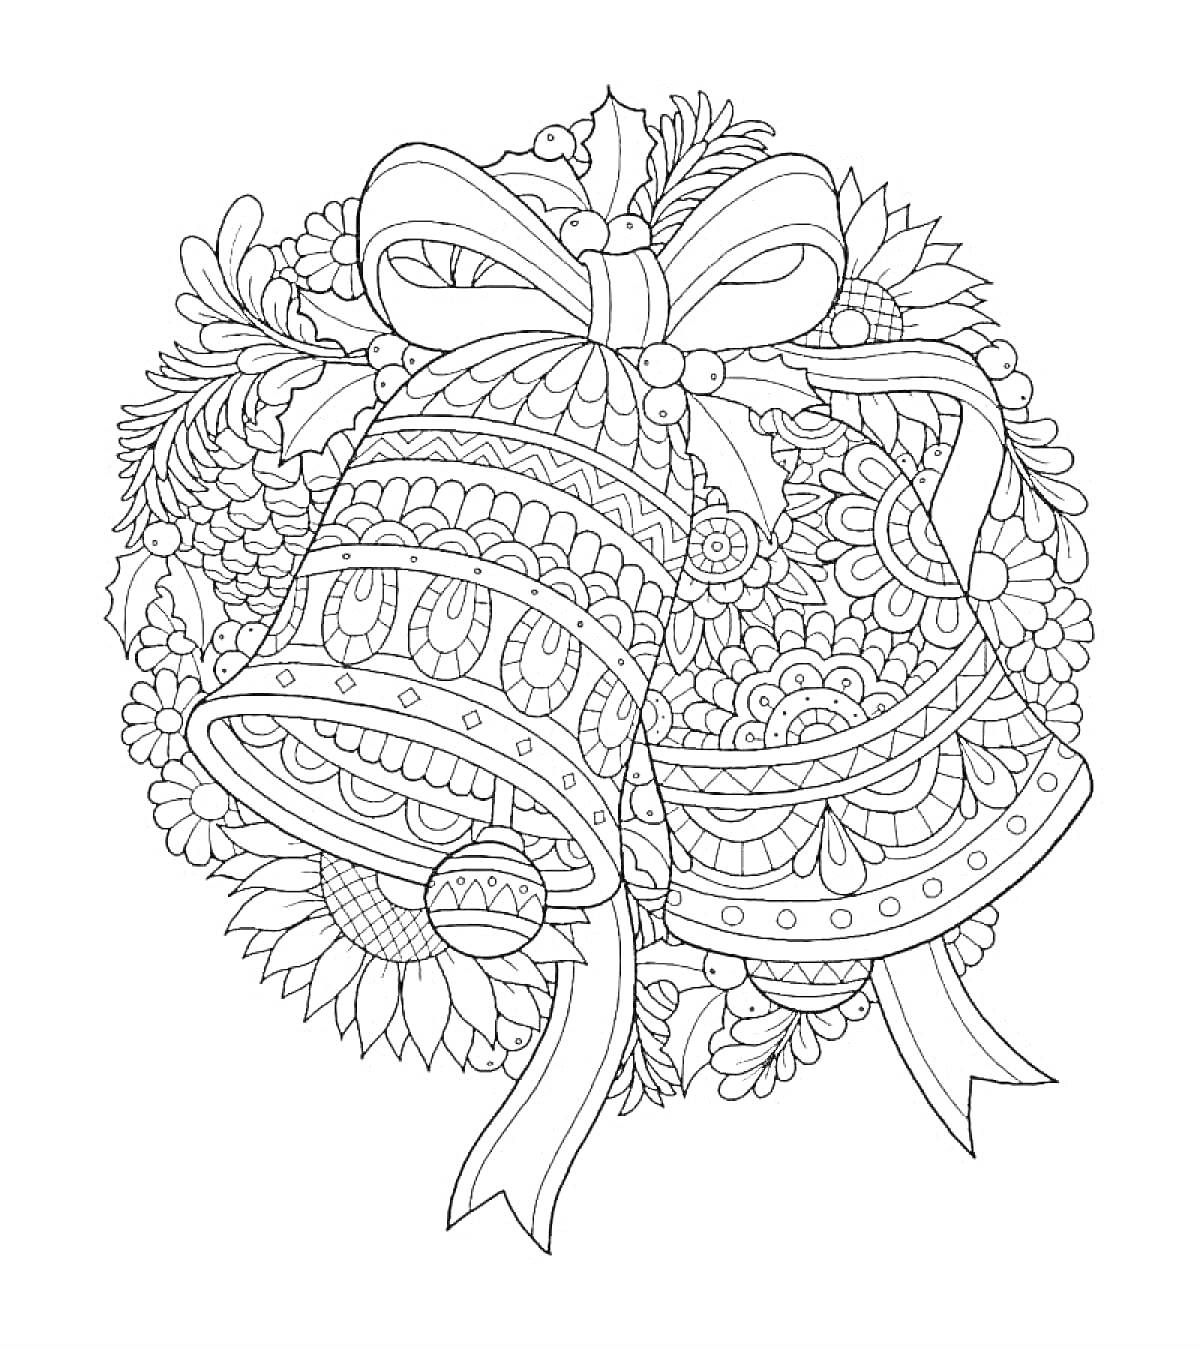 Раскраска Декоративный колокольчик с бантом и цветами на фоне елочных веток